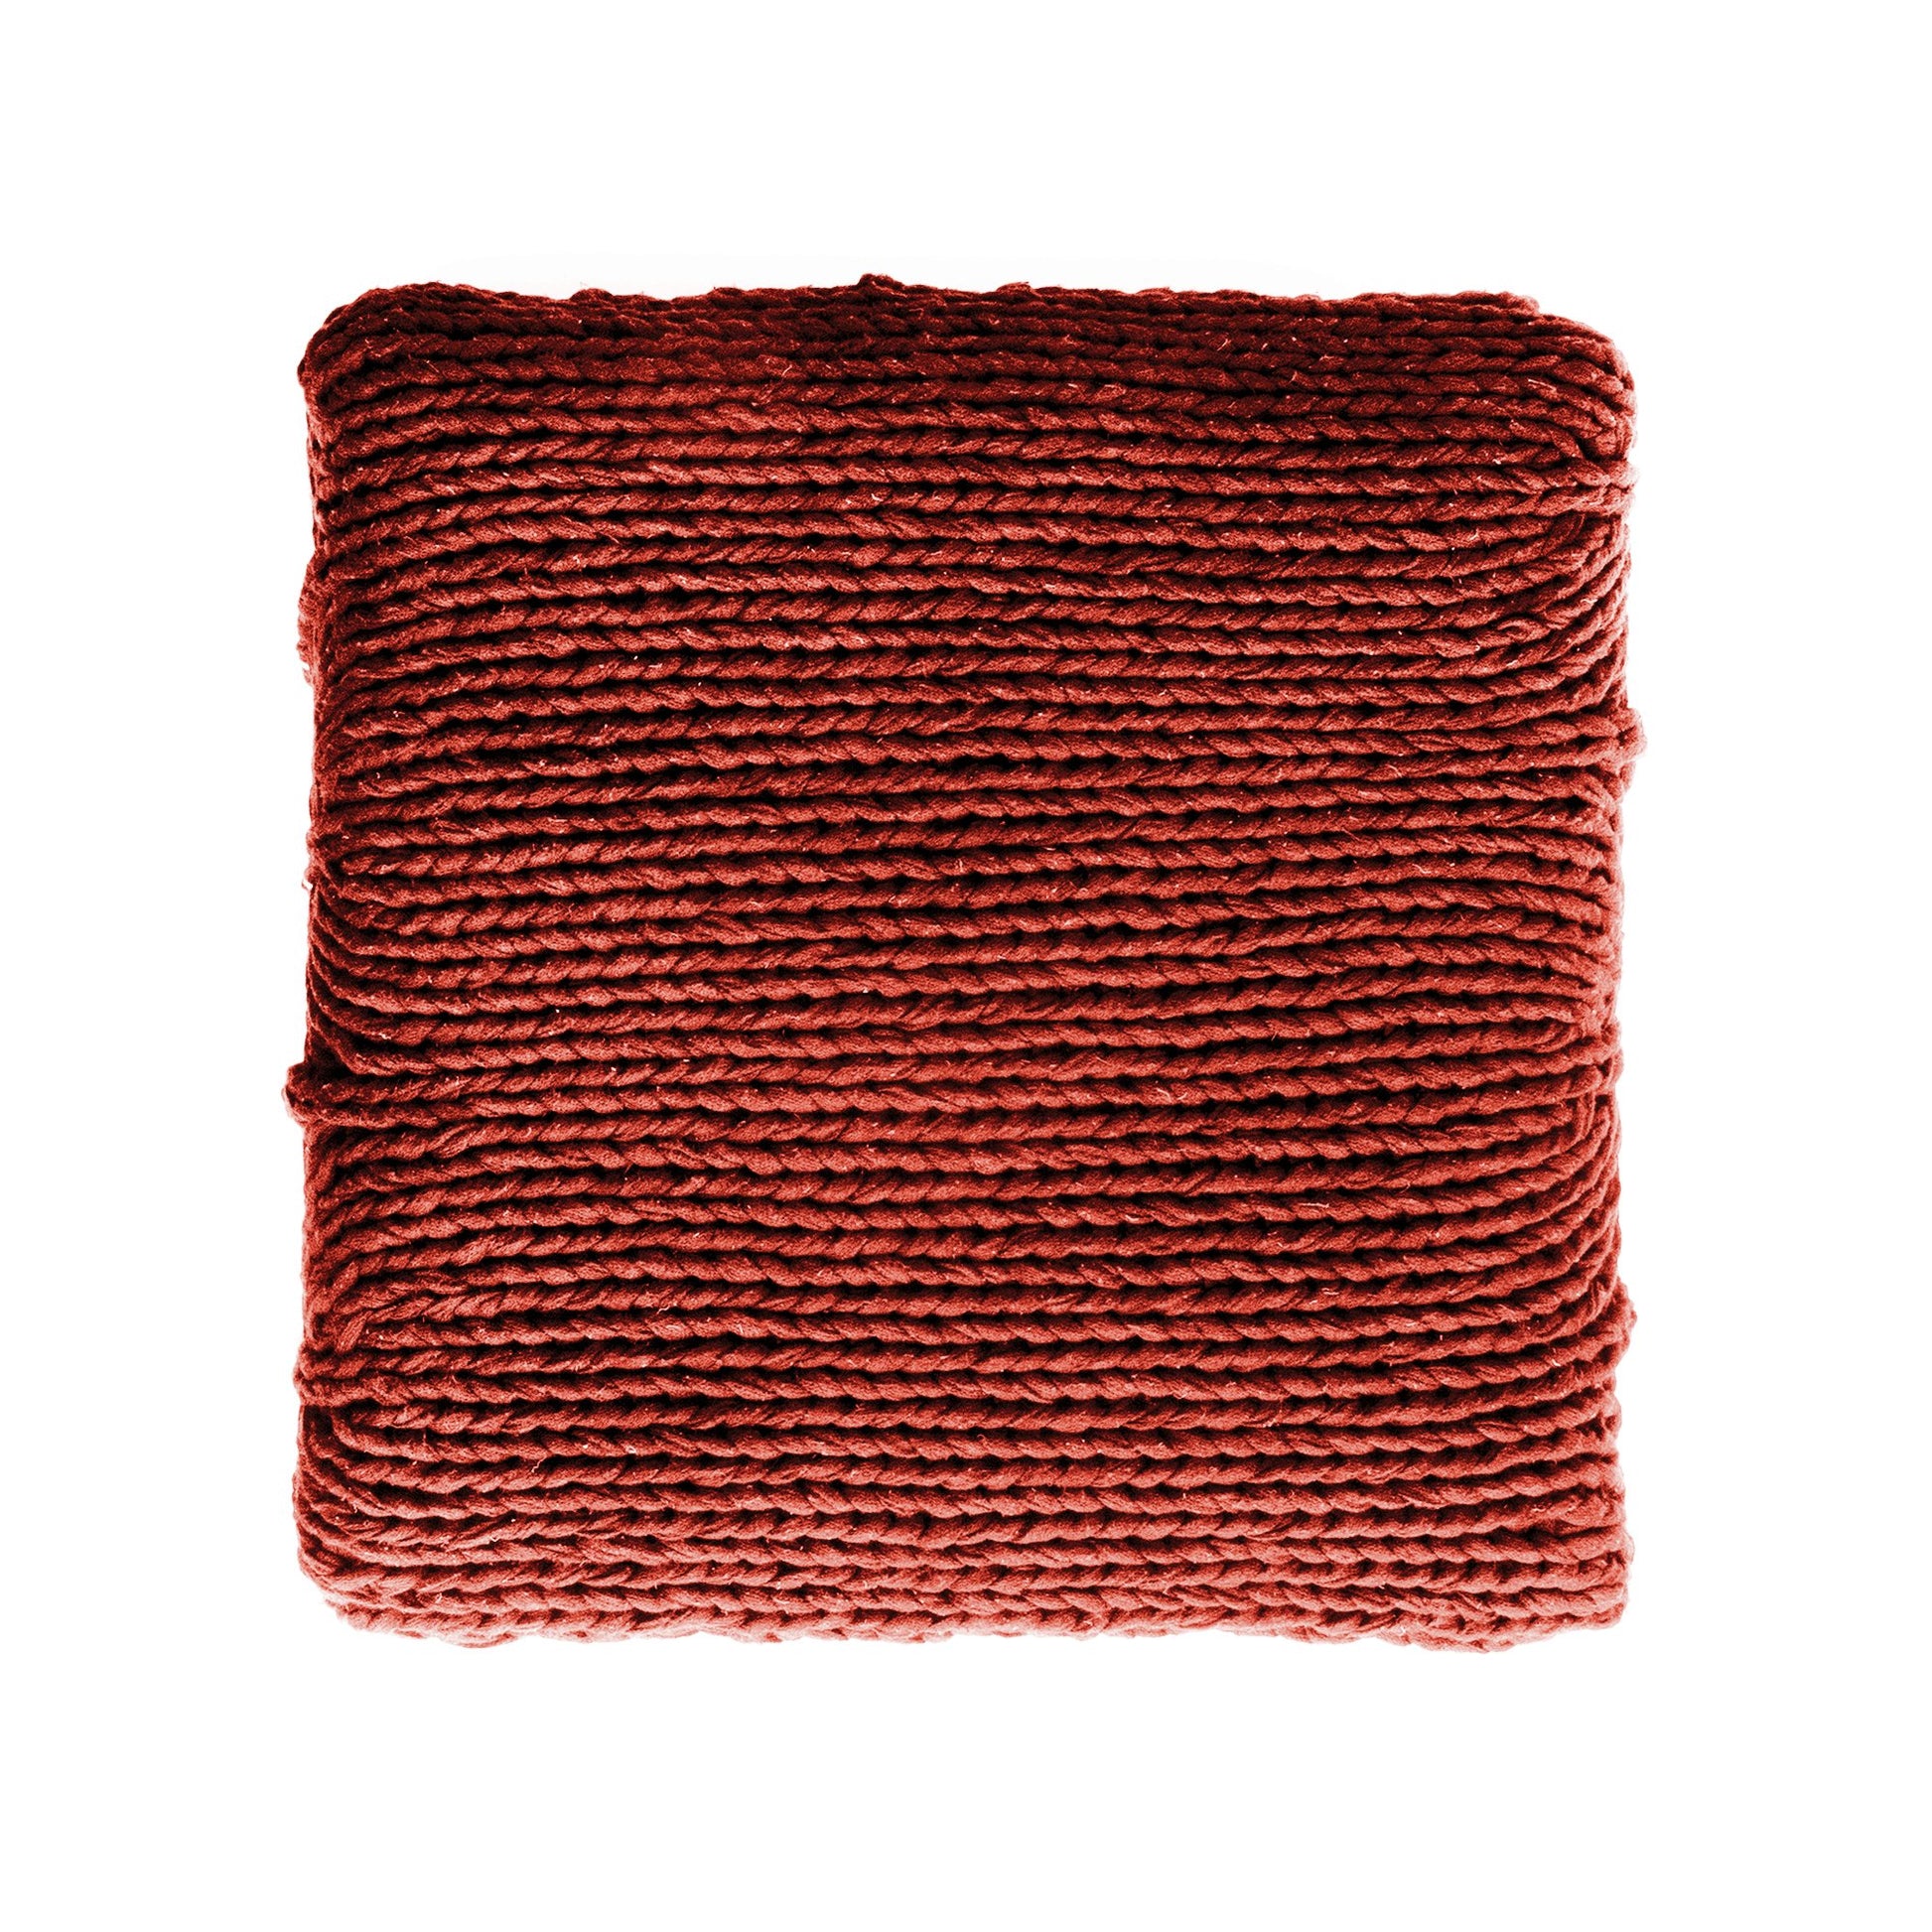  Puff Zig Zag, em tricô artesanal, Terracota/Cru, com fio 100% algodão. Dimensões: Altura - 40cm; Largura - 45cm; Comprimento - 45cm. 